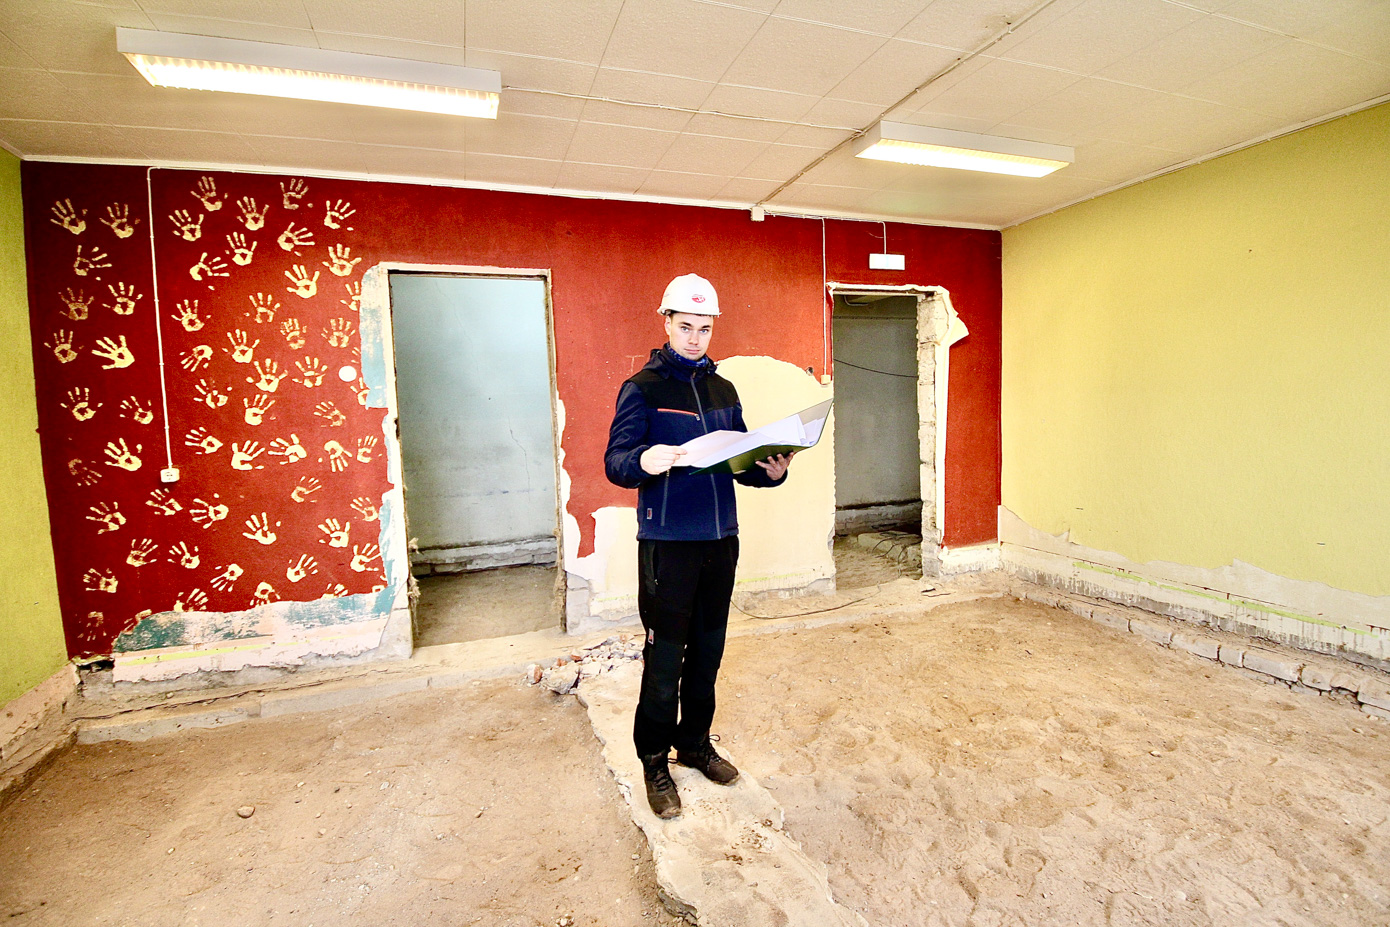 Semuehituse projektijuht Tomass Tuvikene Missos teenuskeskuse lammutatud 29,6ruutmeetrises päevakeskuse ruumis, kus on omal ajal püütud väsinud ruumi käejälgedega ilmestada. FOTO: Kalev Annom